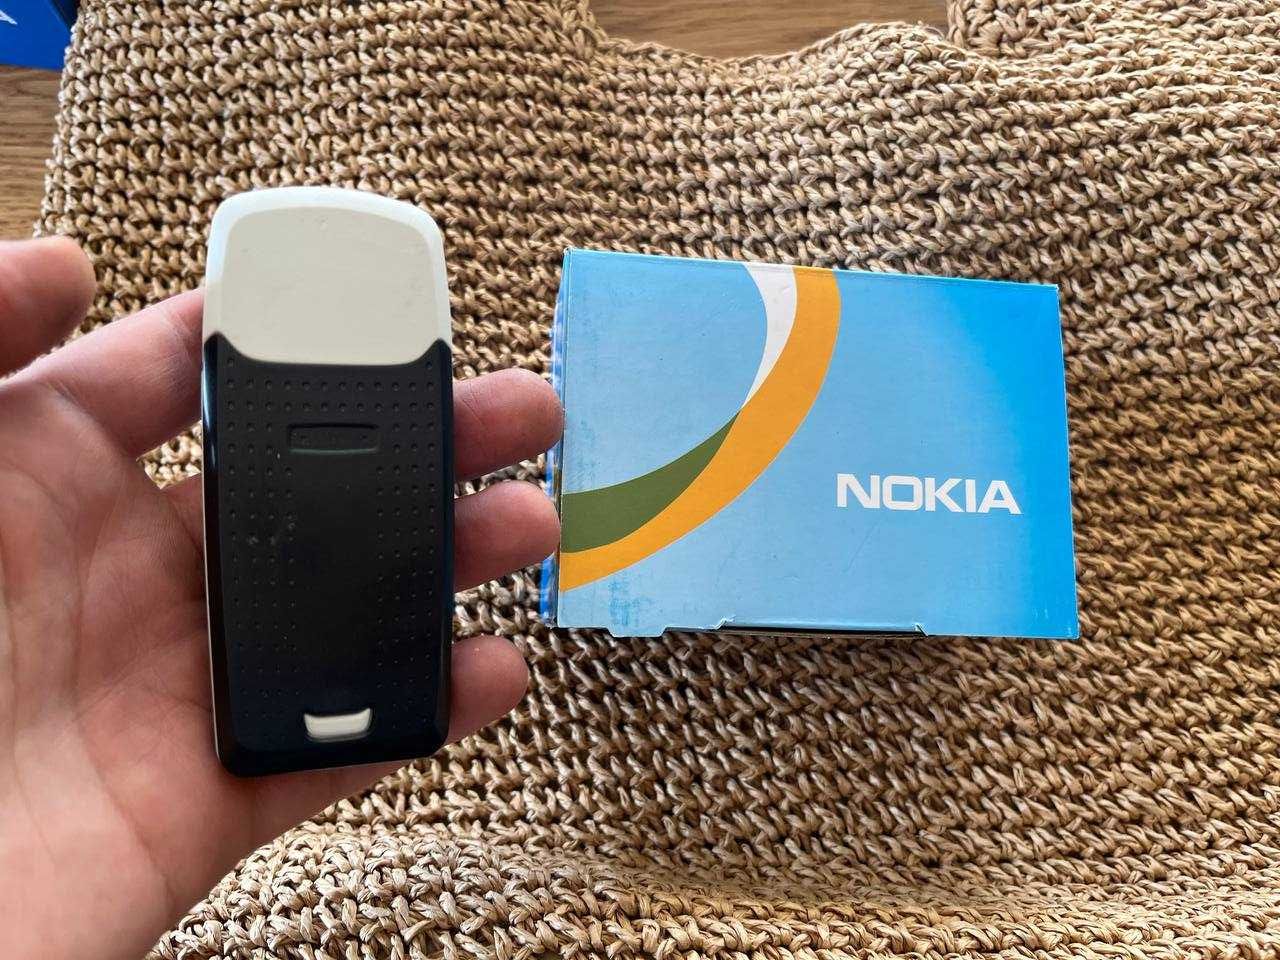 Винтажный GSM Nokia 3120 новый телефон Silver в коробке